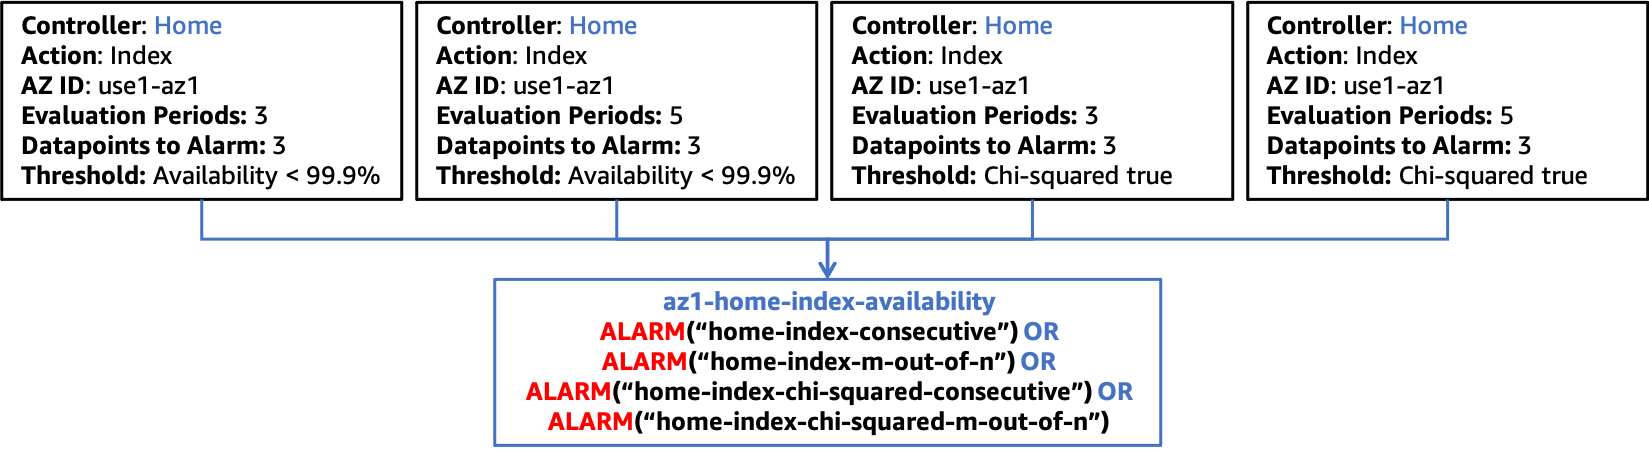 Schéma illustrant l'intégration du test statistique du Khi deux aux alarmes composites